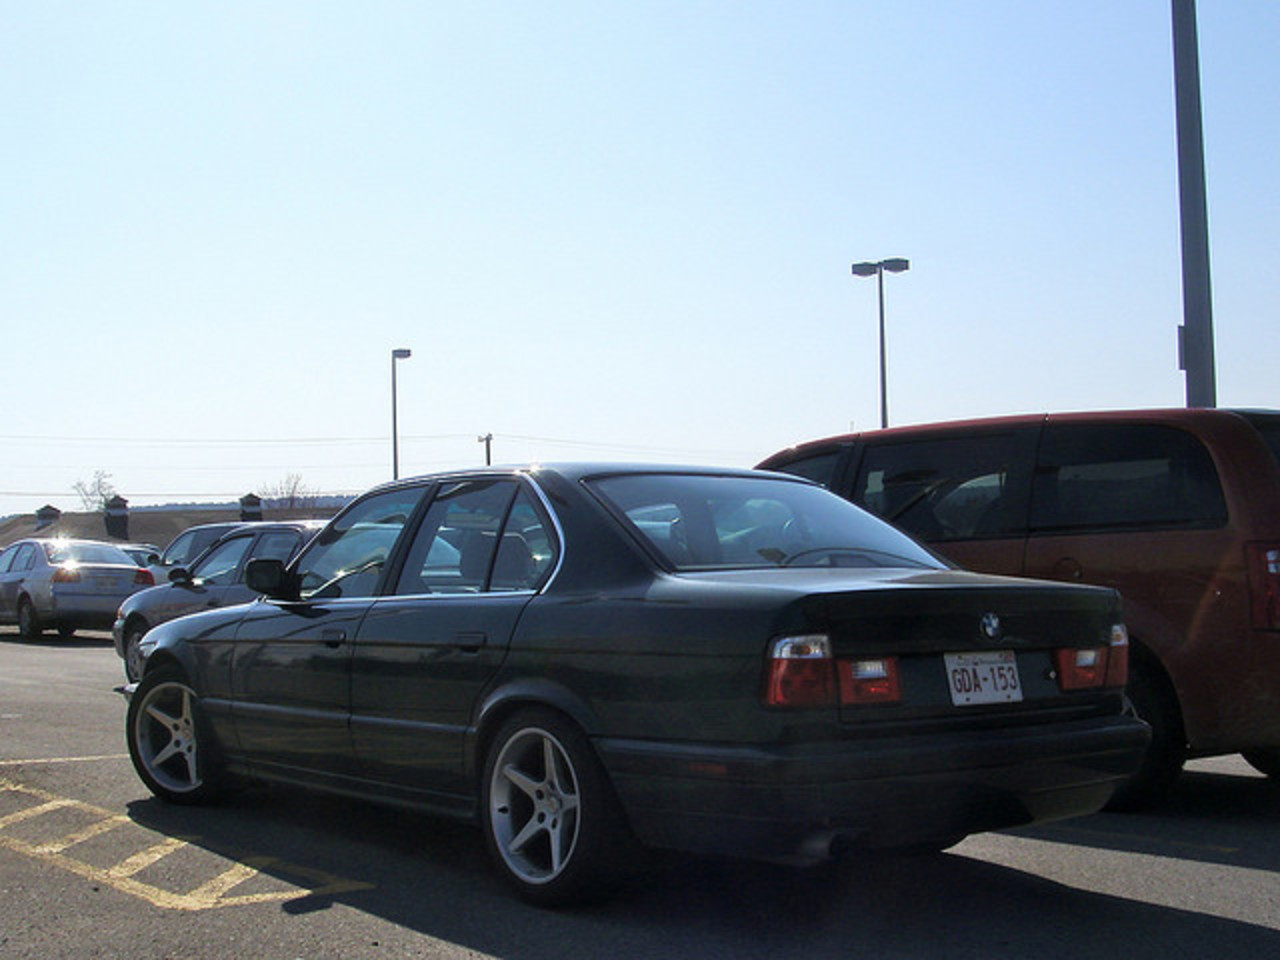 BMW 525i 1992 (E34) / Flickr - Partage de photos!